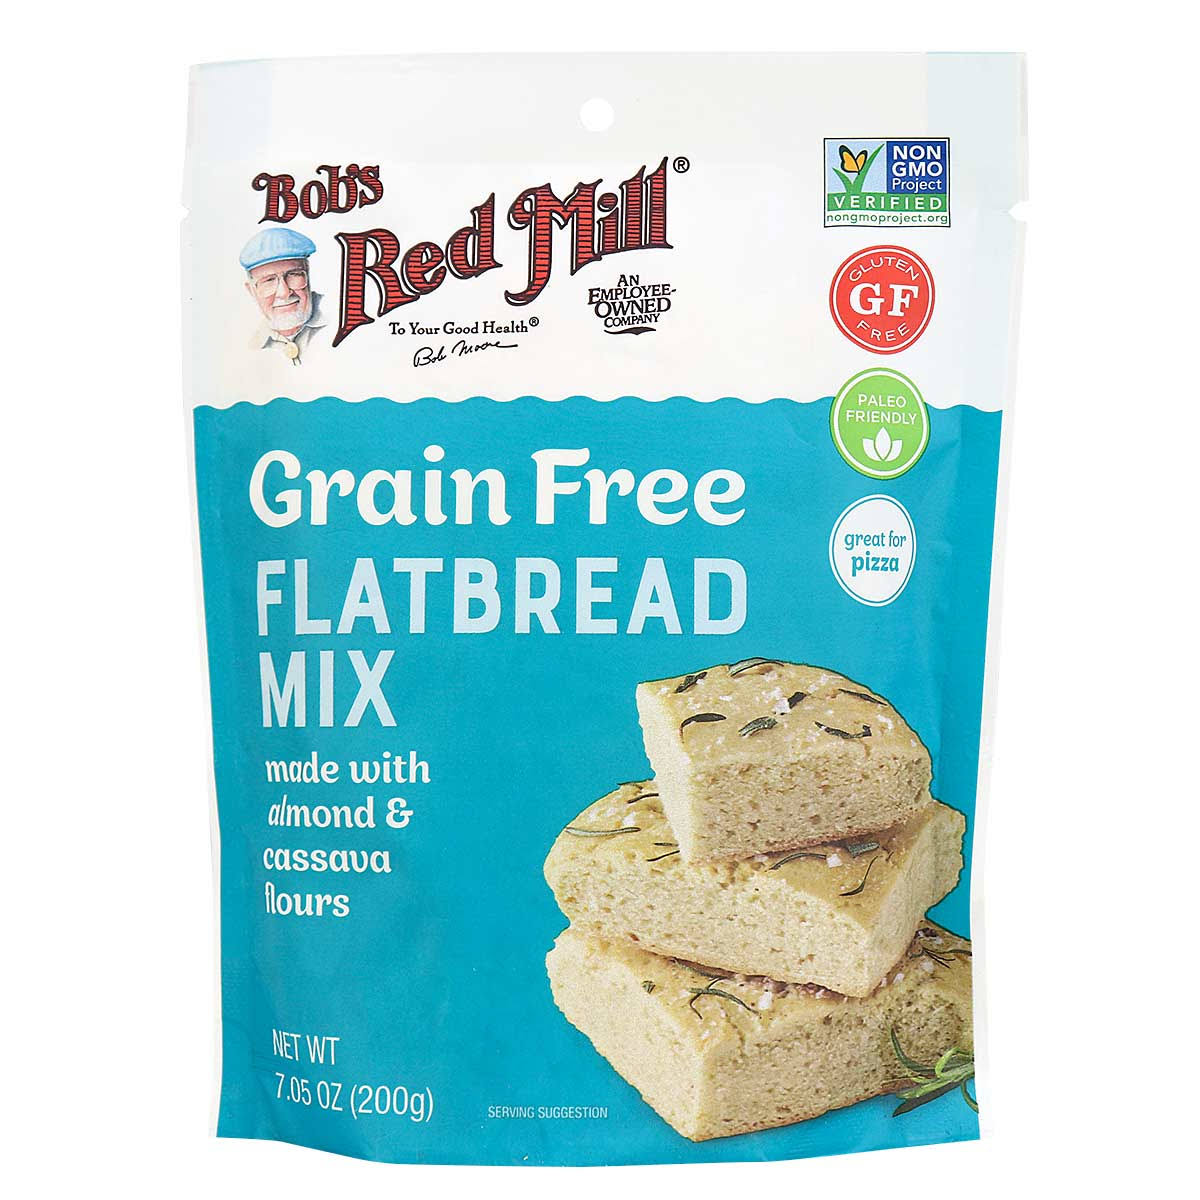 Bob's Red Mill Grain-free Flatbread Mix